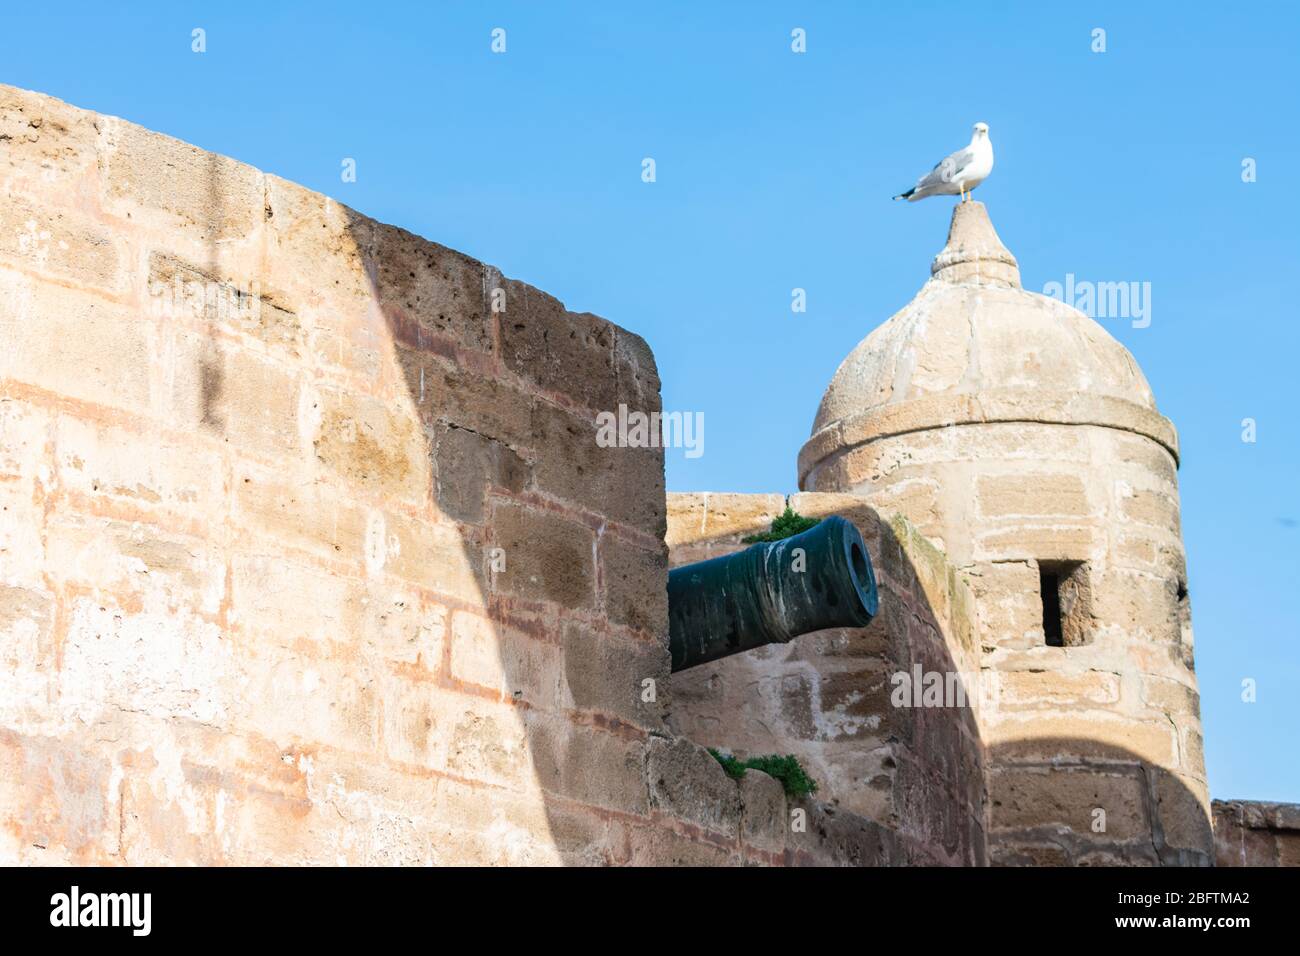 Cannon le long des murs d'Essaouira Maroc Banque D'Images